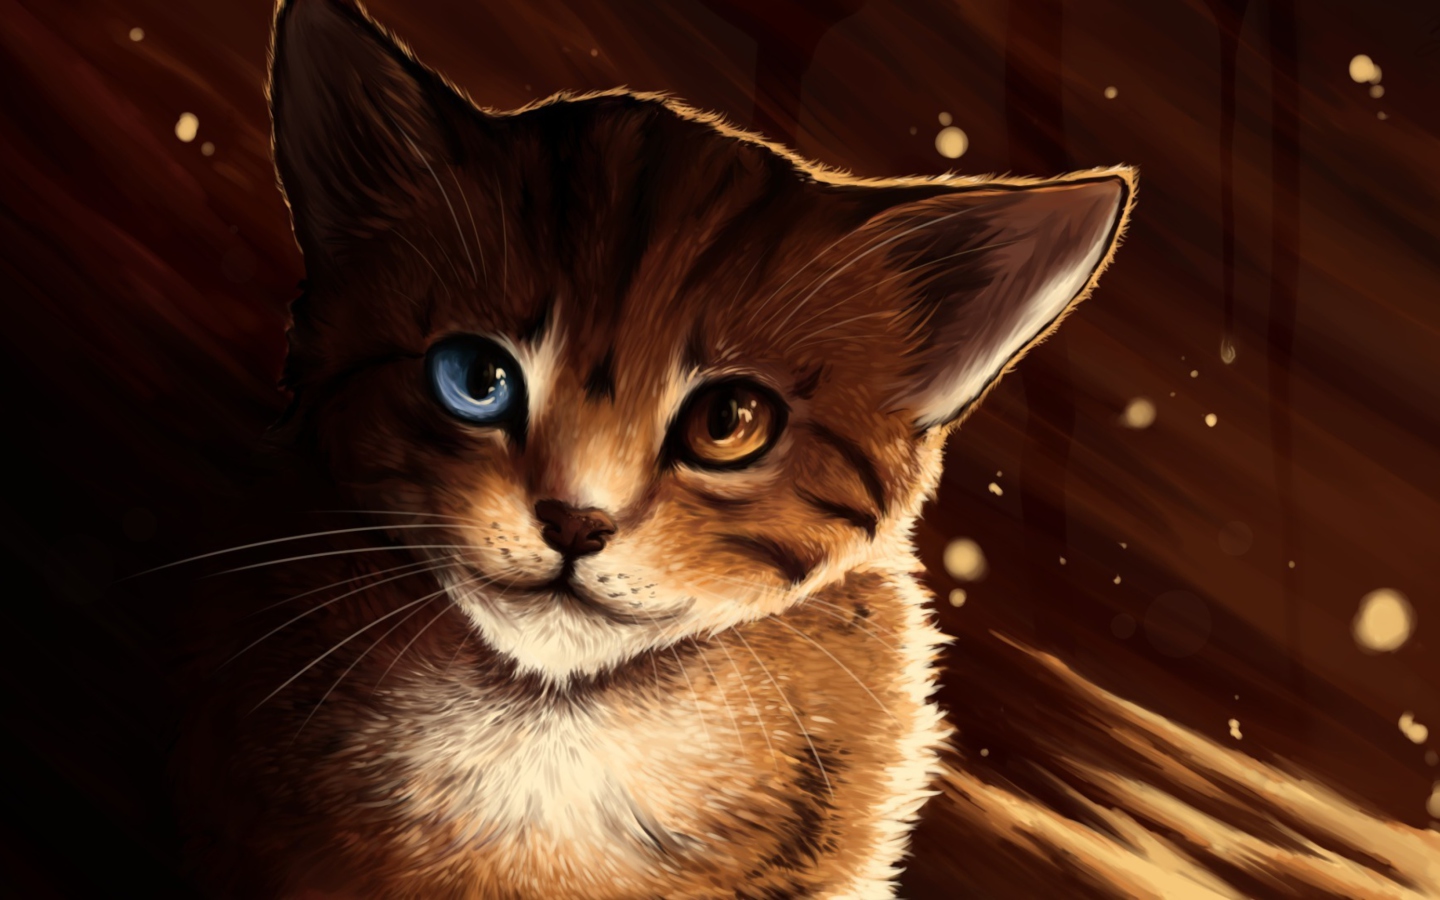 Drawn Cat screenshot #1 1440x900